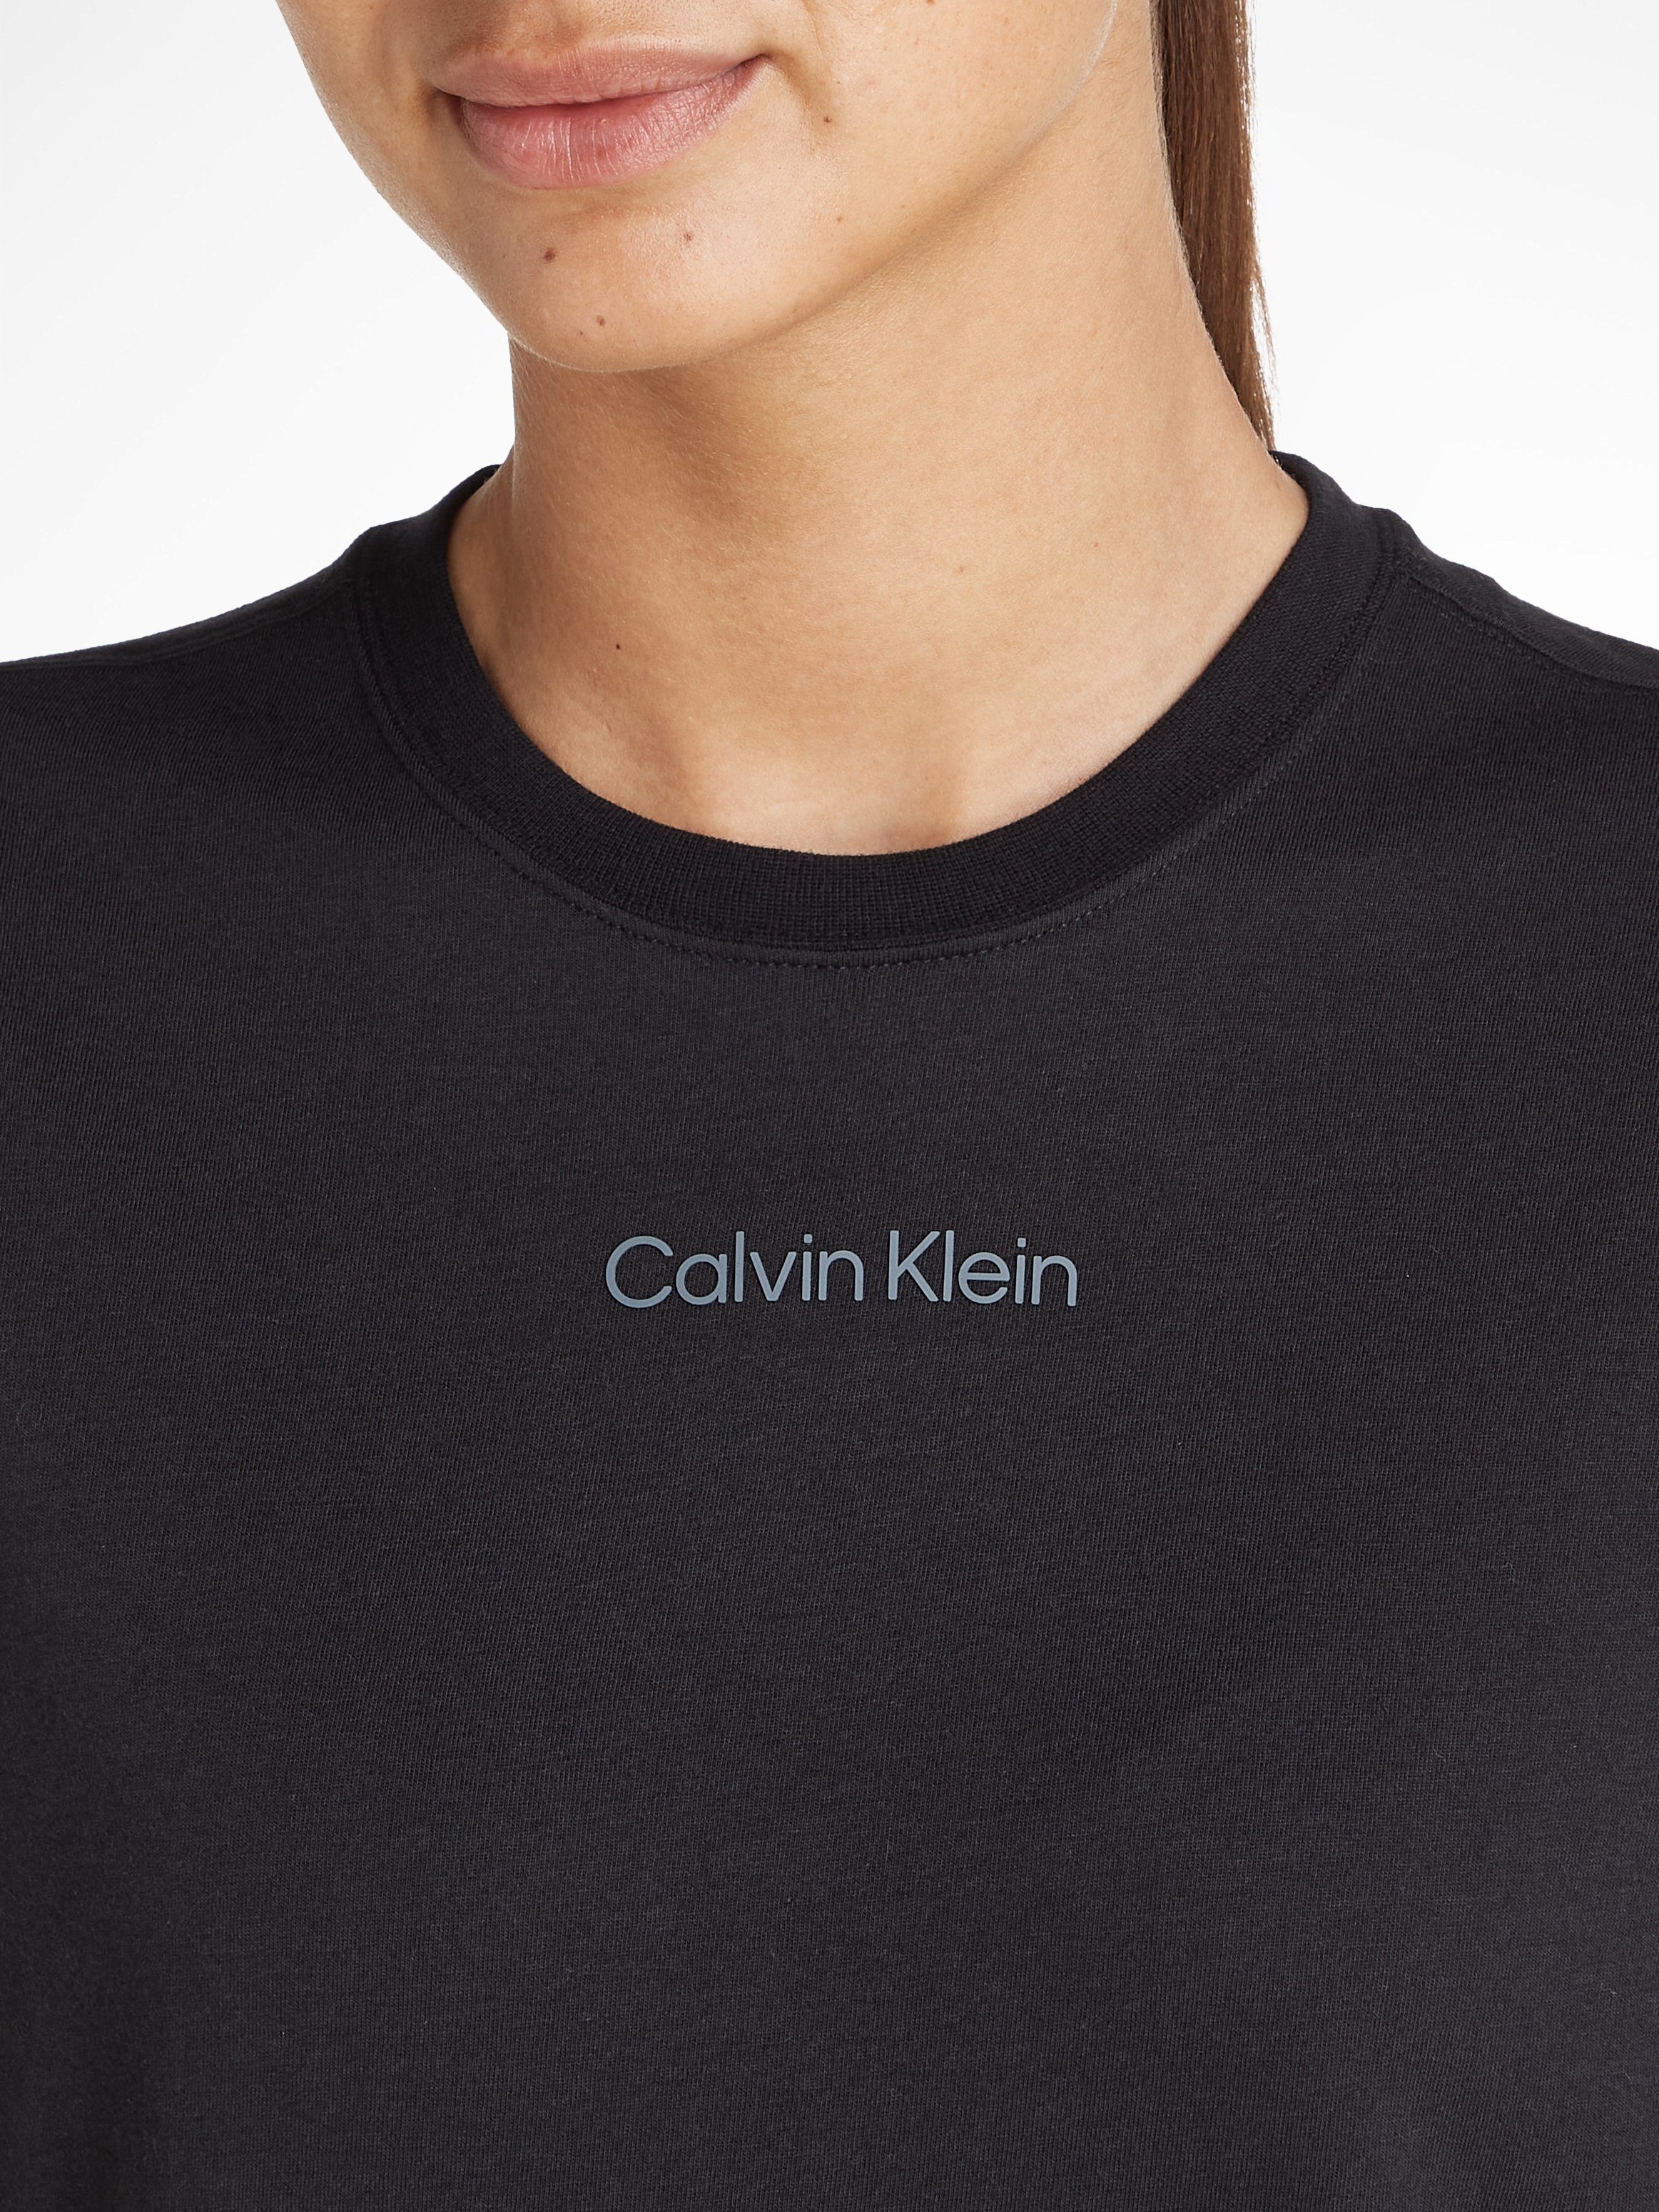 schwarz Klein T-Shirt Calvin Sport